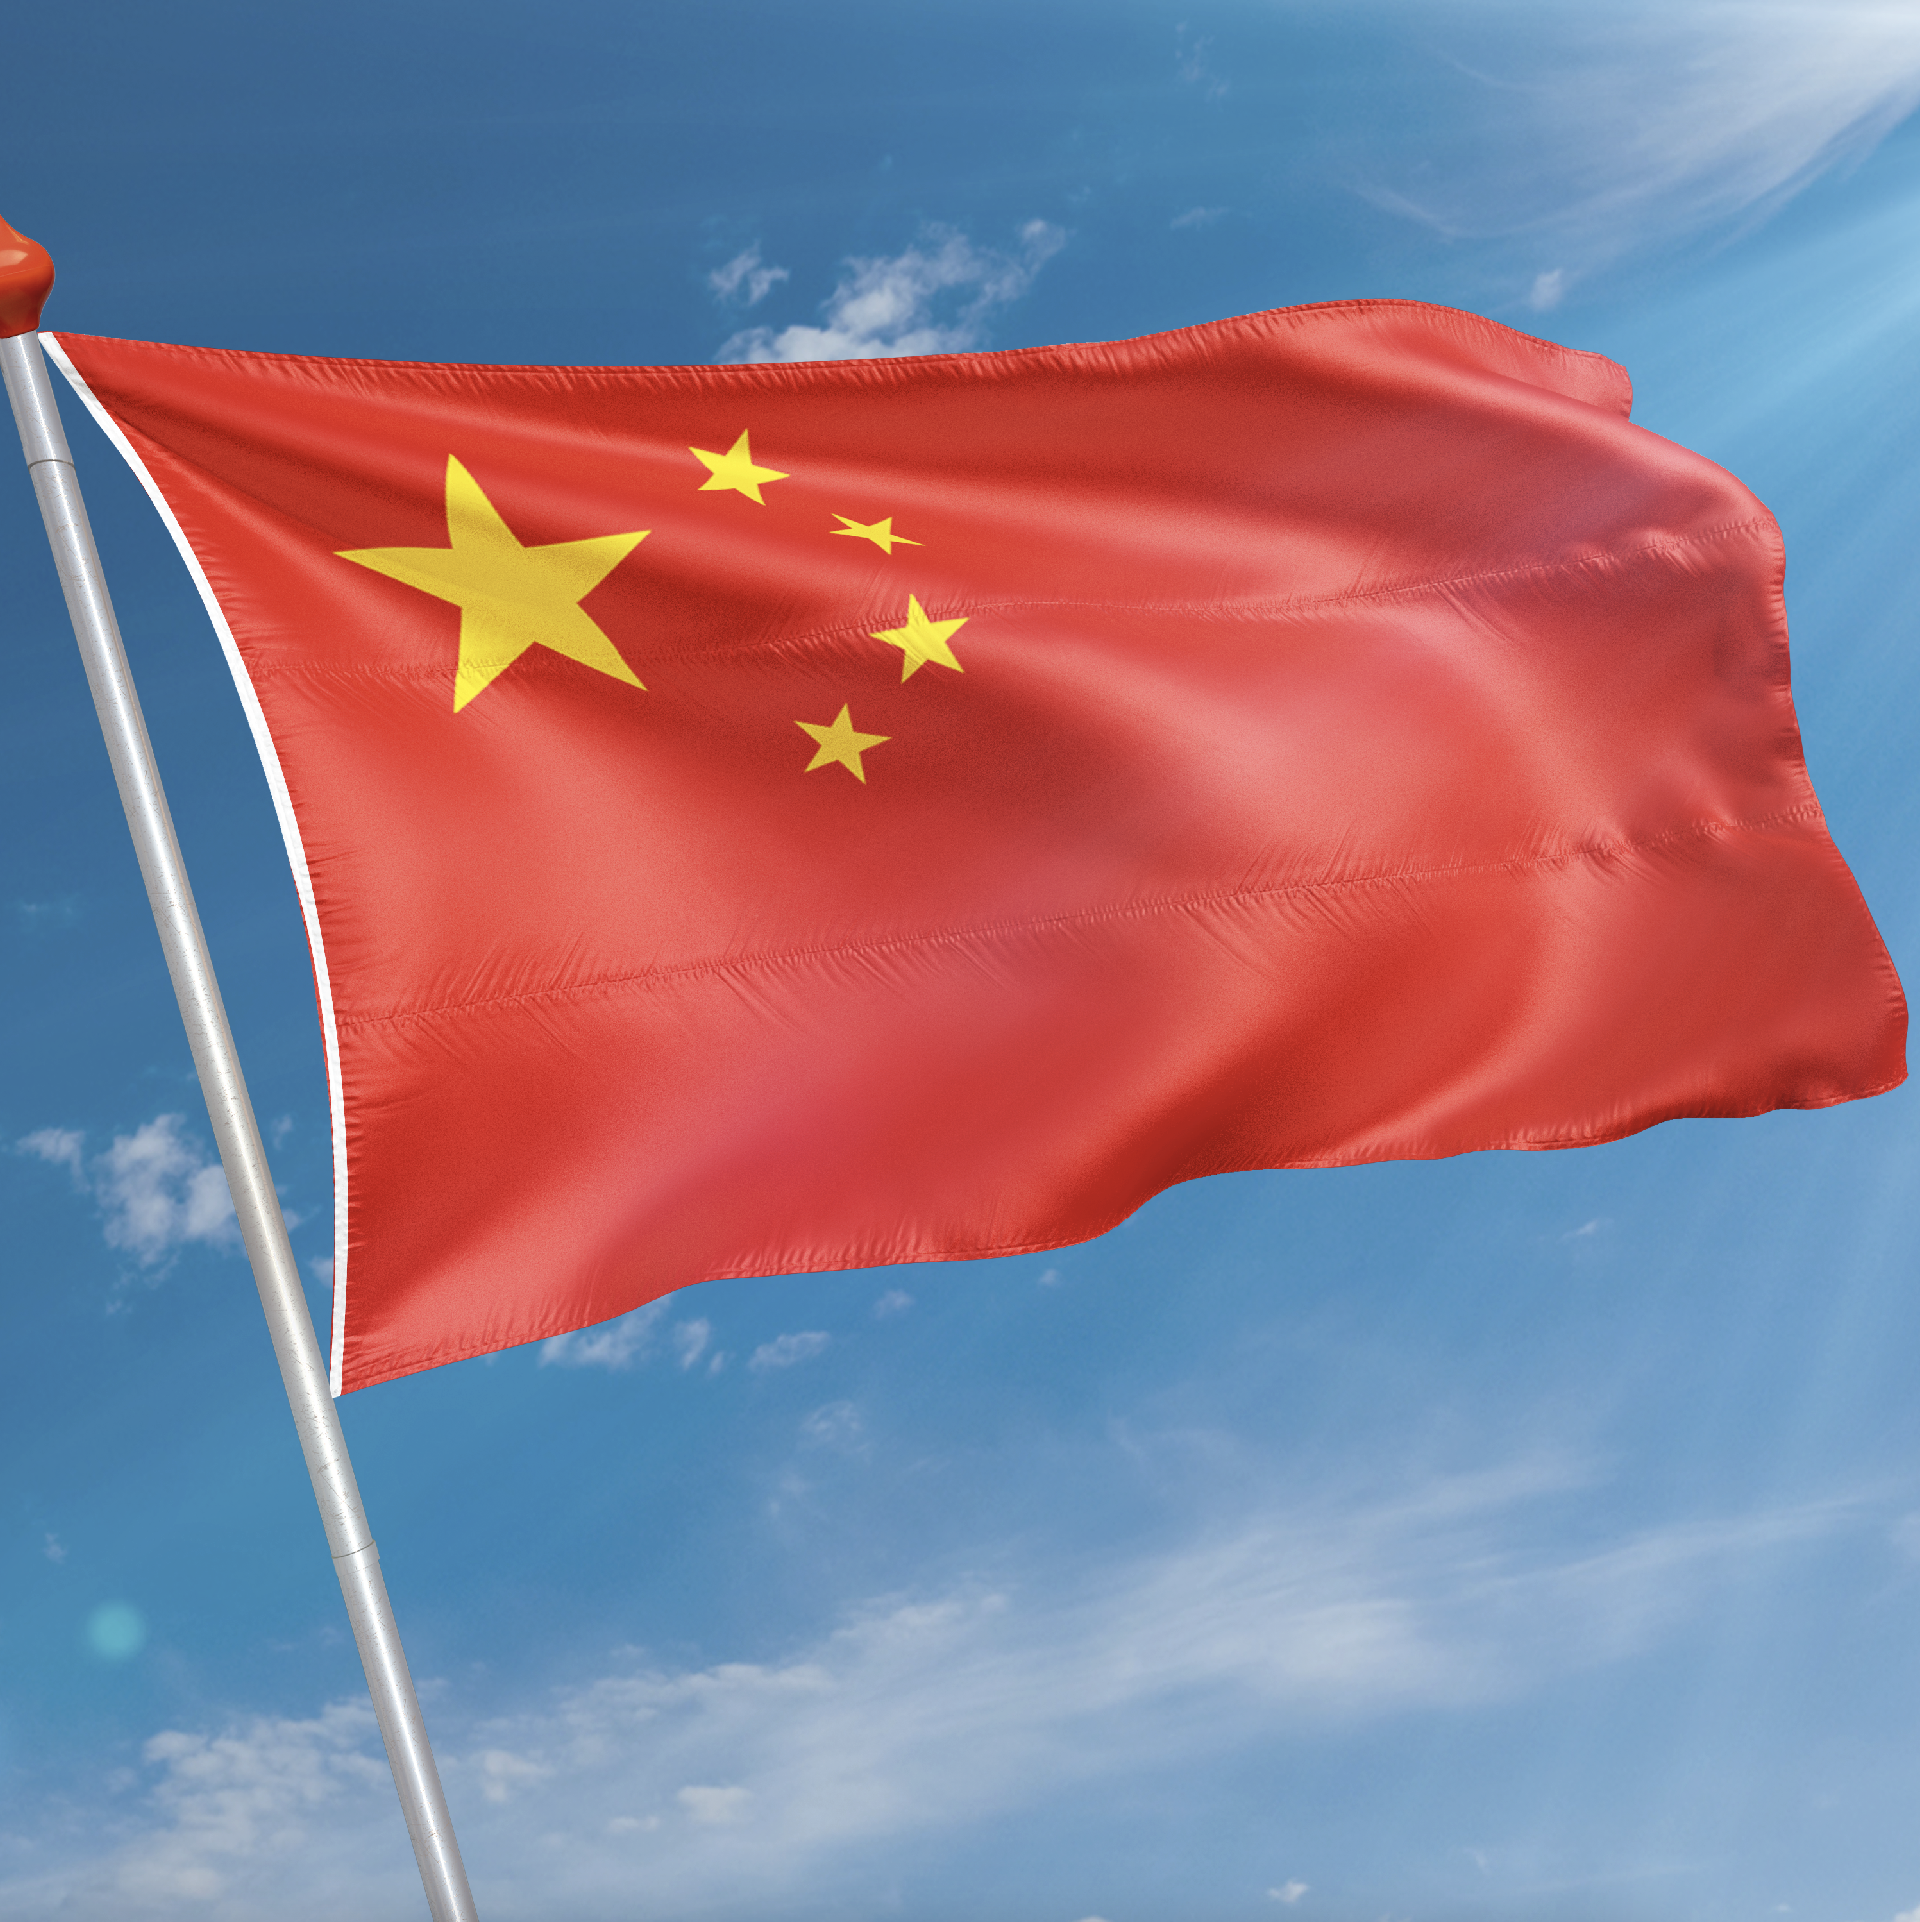 Almachtig Tektonisch Economie Chinese vlag kopen? | Snelle levering & 8.7 klantbeoordeling | Vlaggen.com